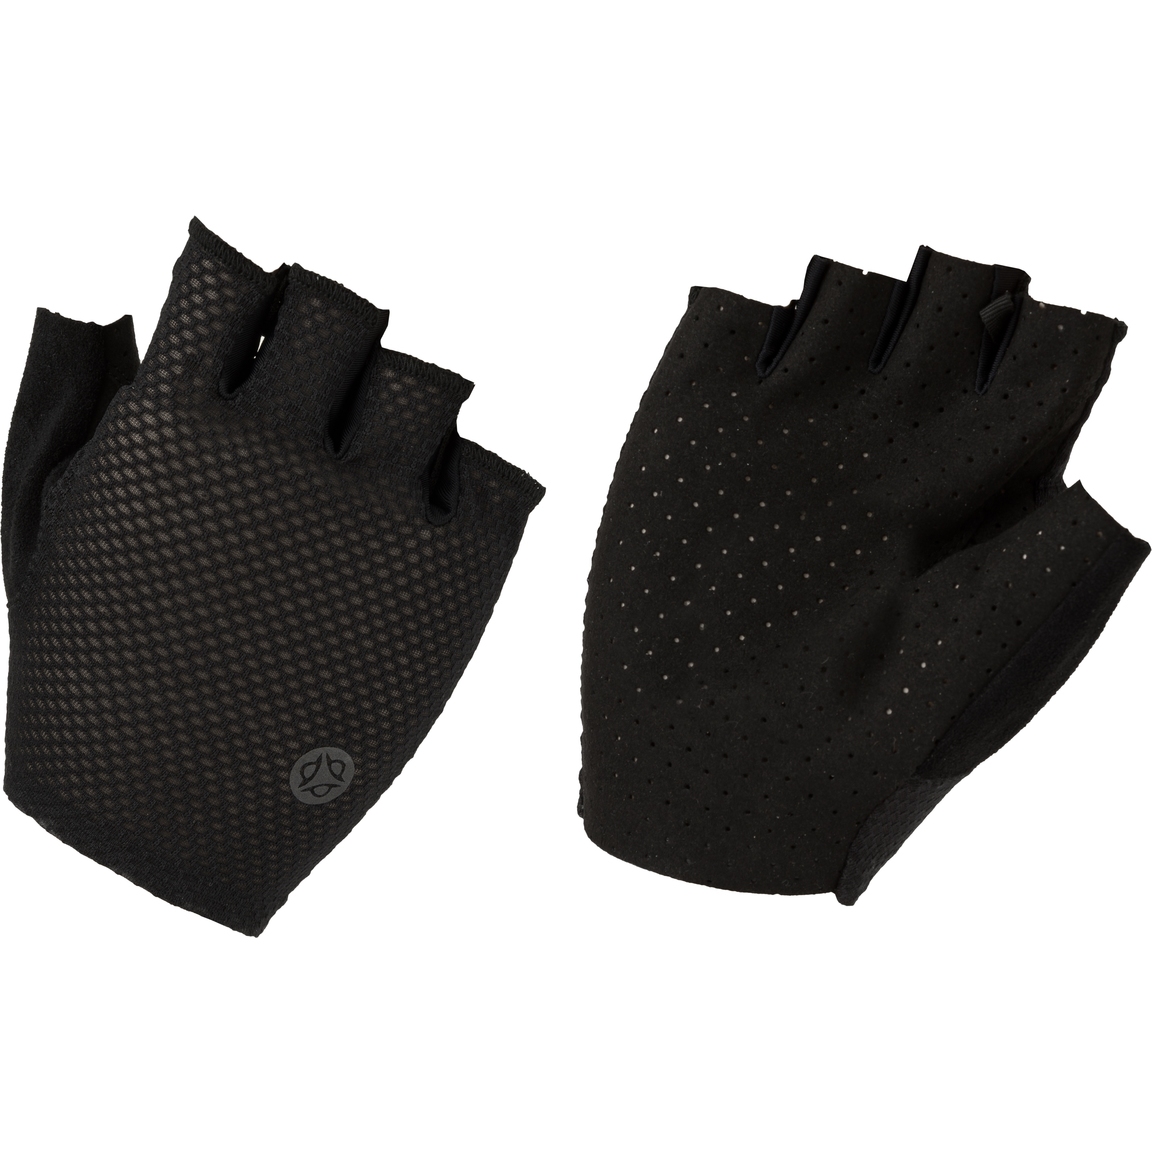 Productfoto van AGU Essential High Summer Handschoenen met Korte Vingers - zwart